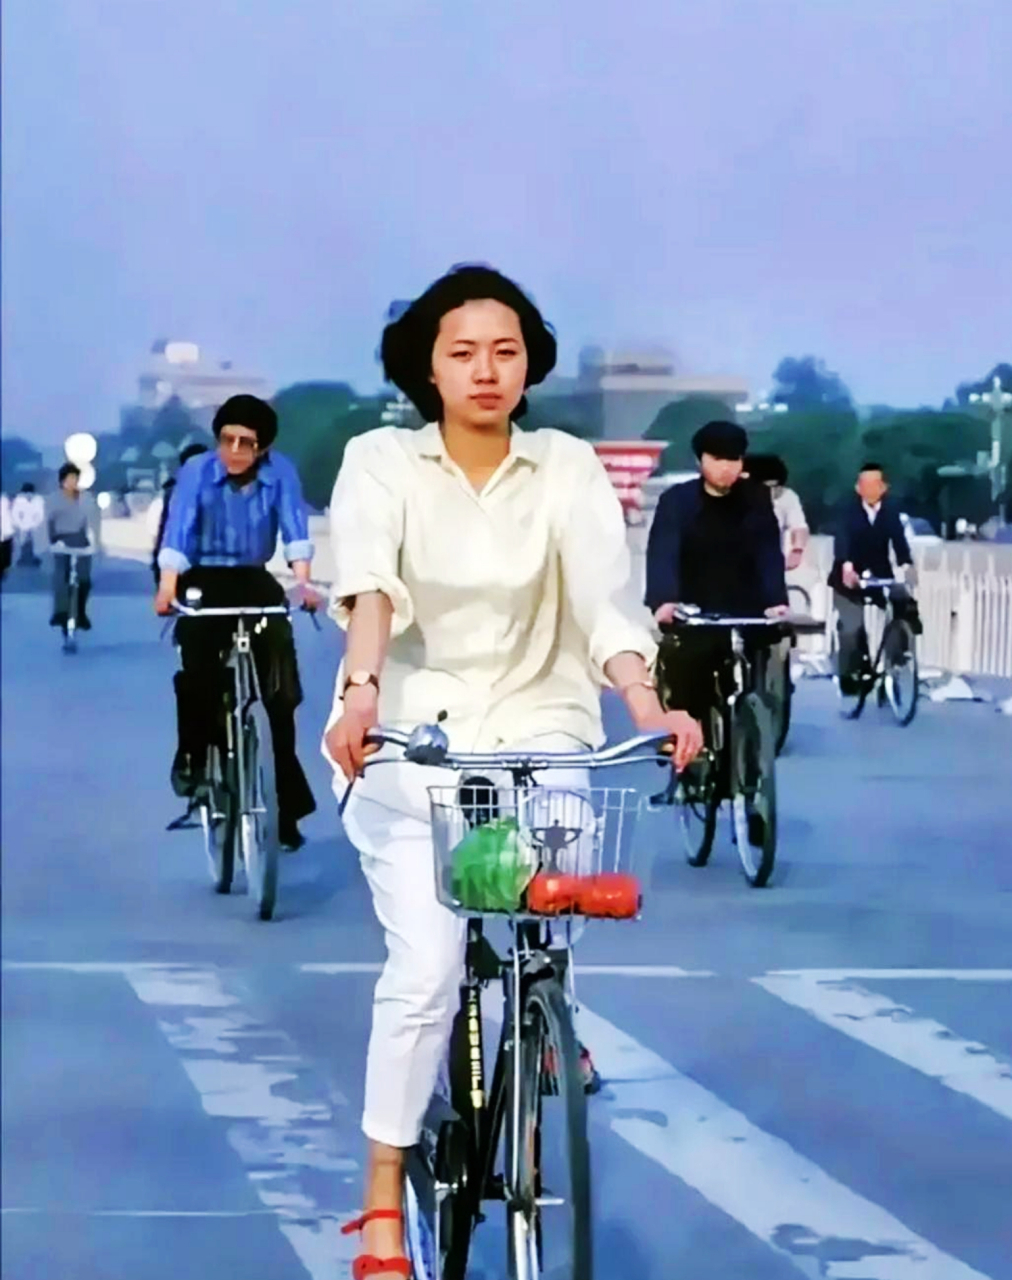 90年代初期,北京的街头,这个骑着单车的女孩穿着简单干净的衣服,随处